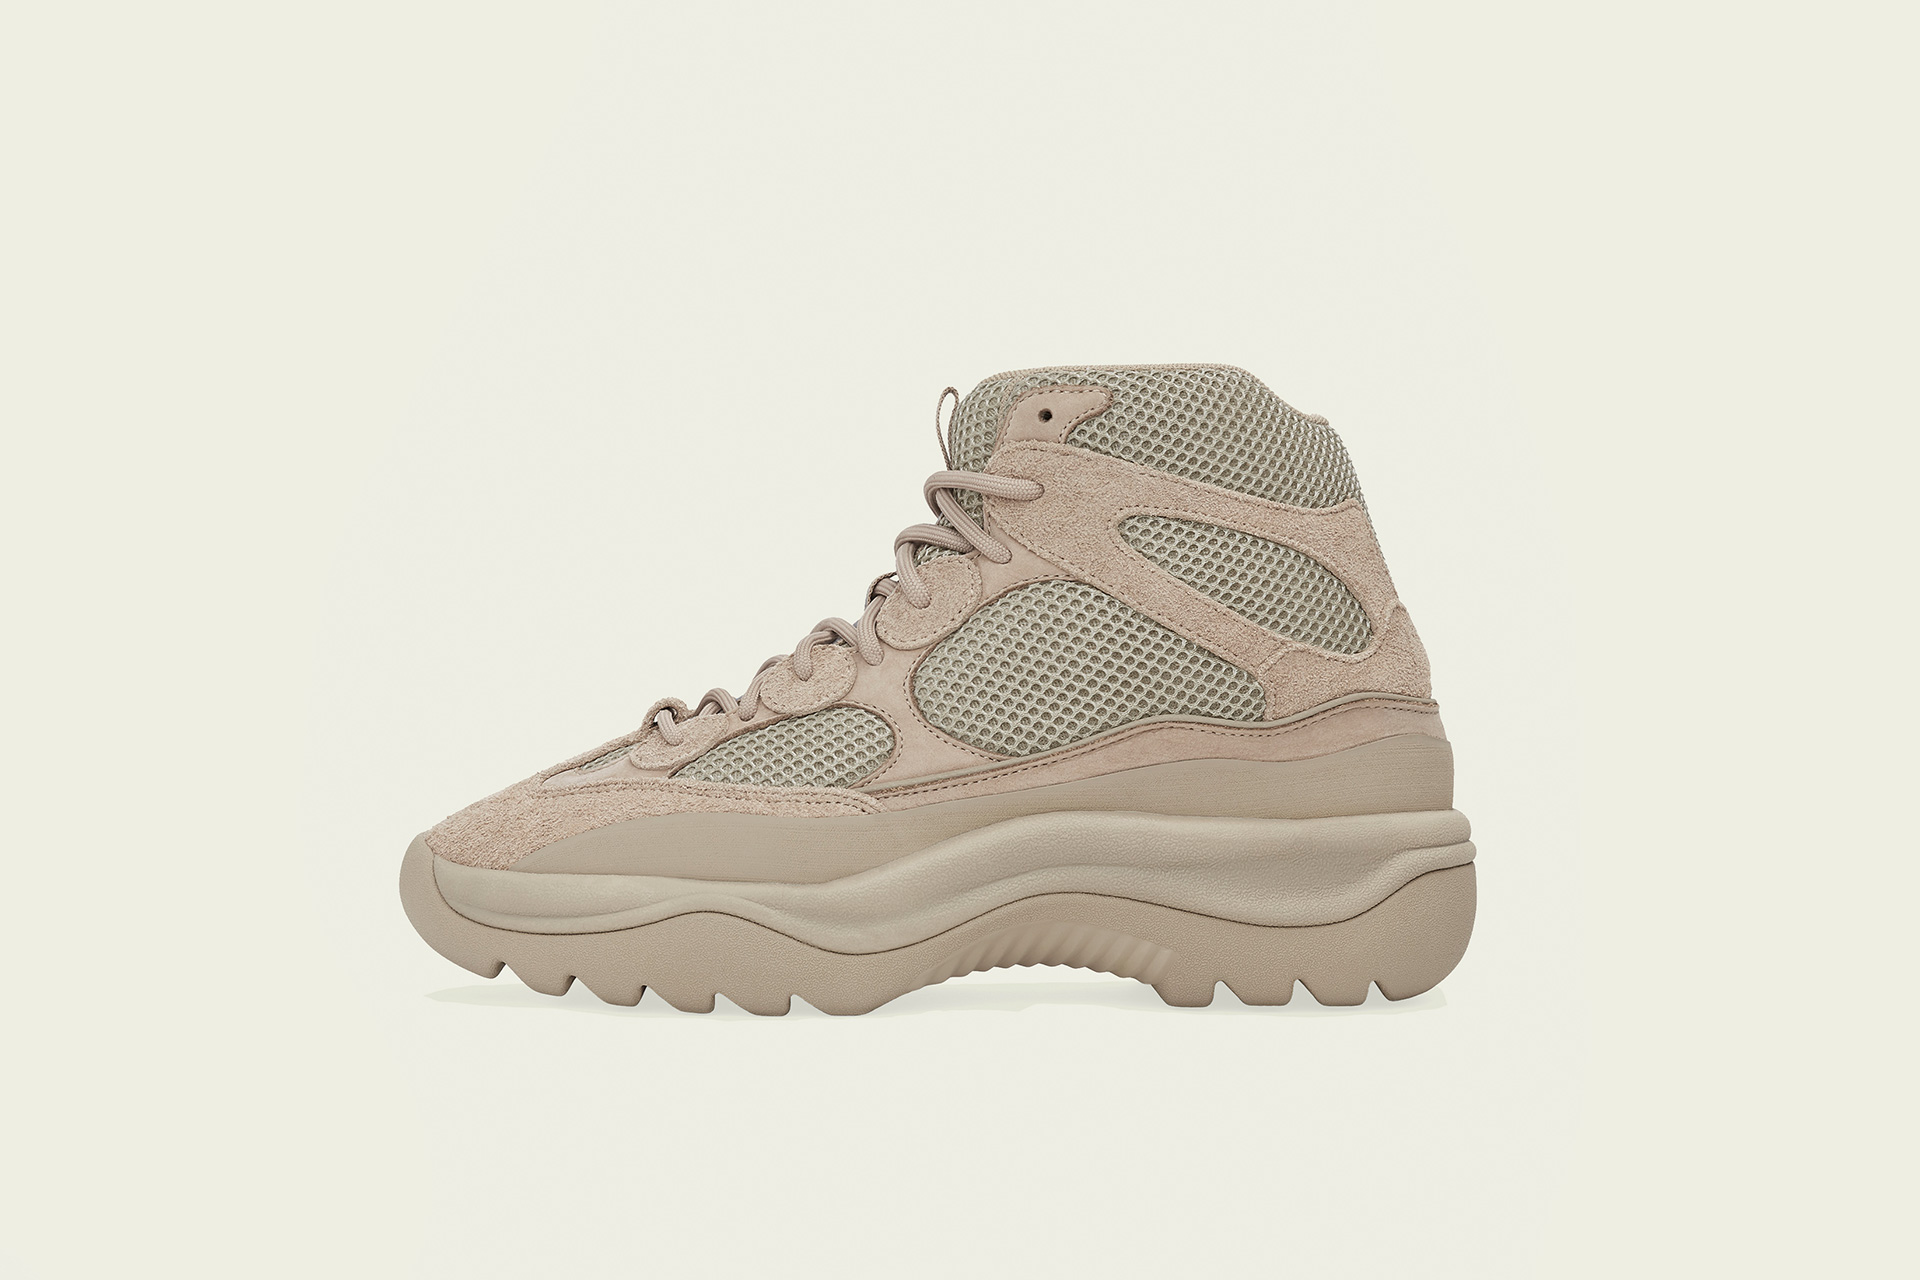 adidas Yeezy Desert Boot, Rock - Footshop - Releases